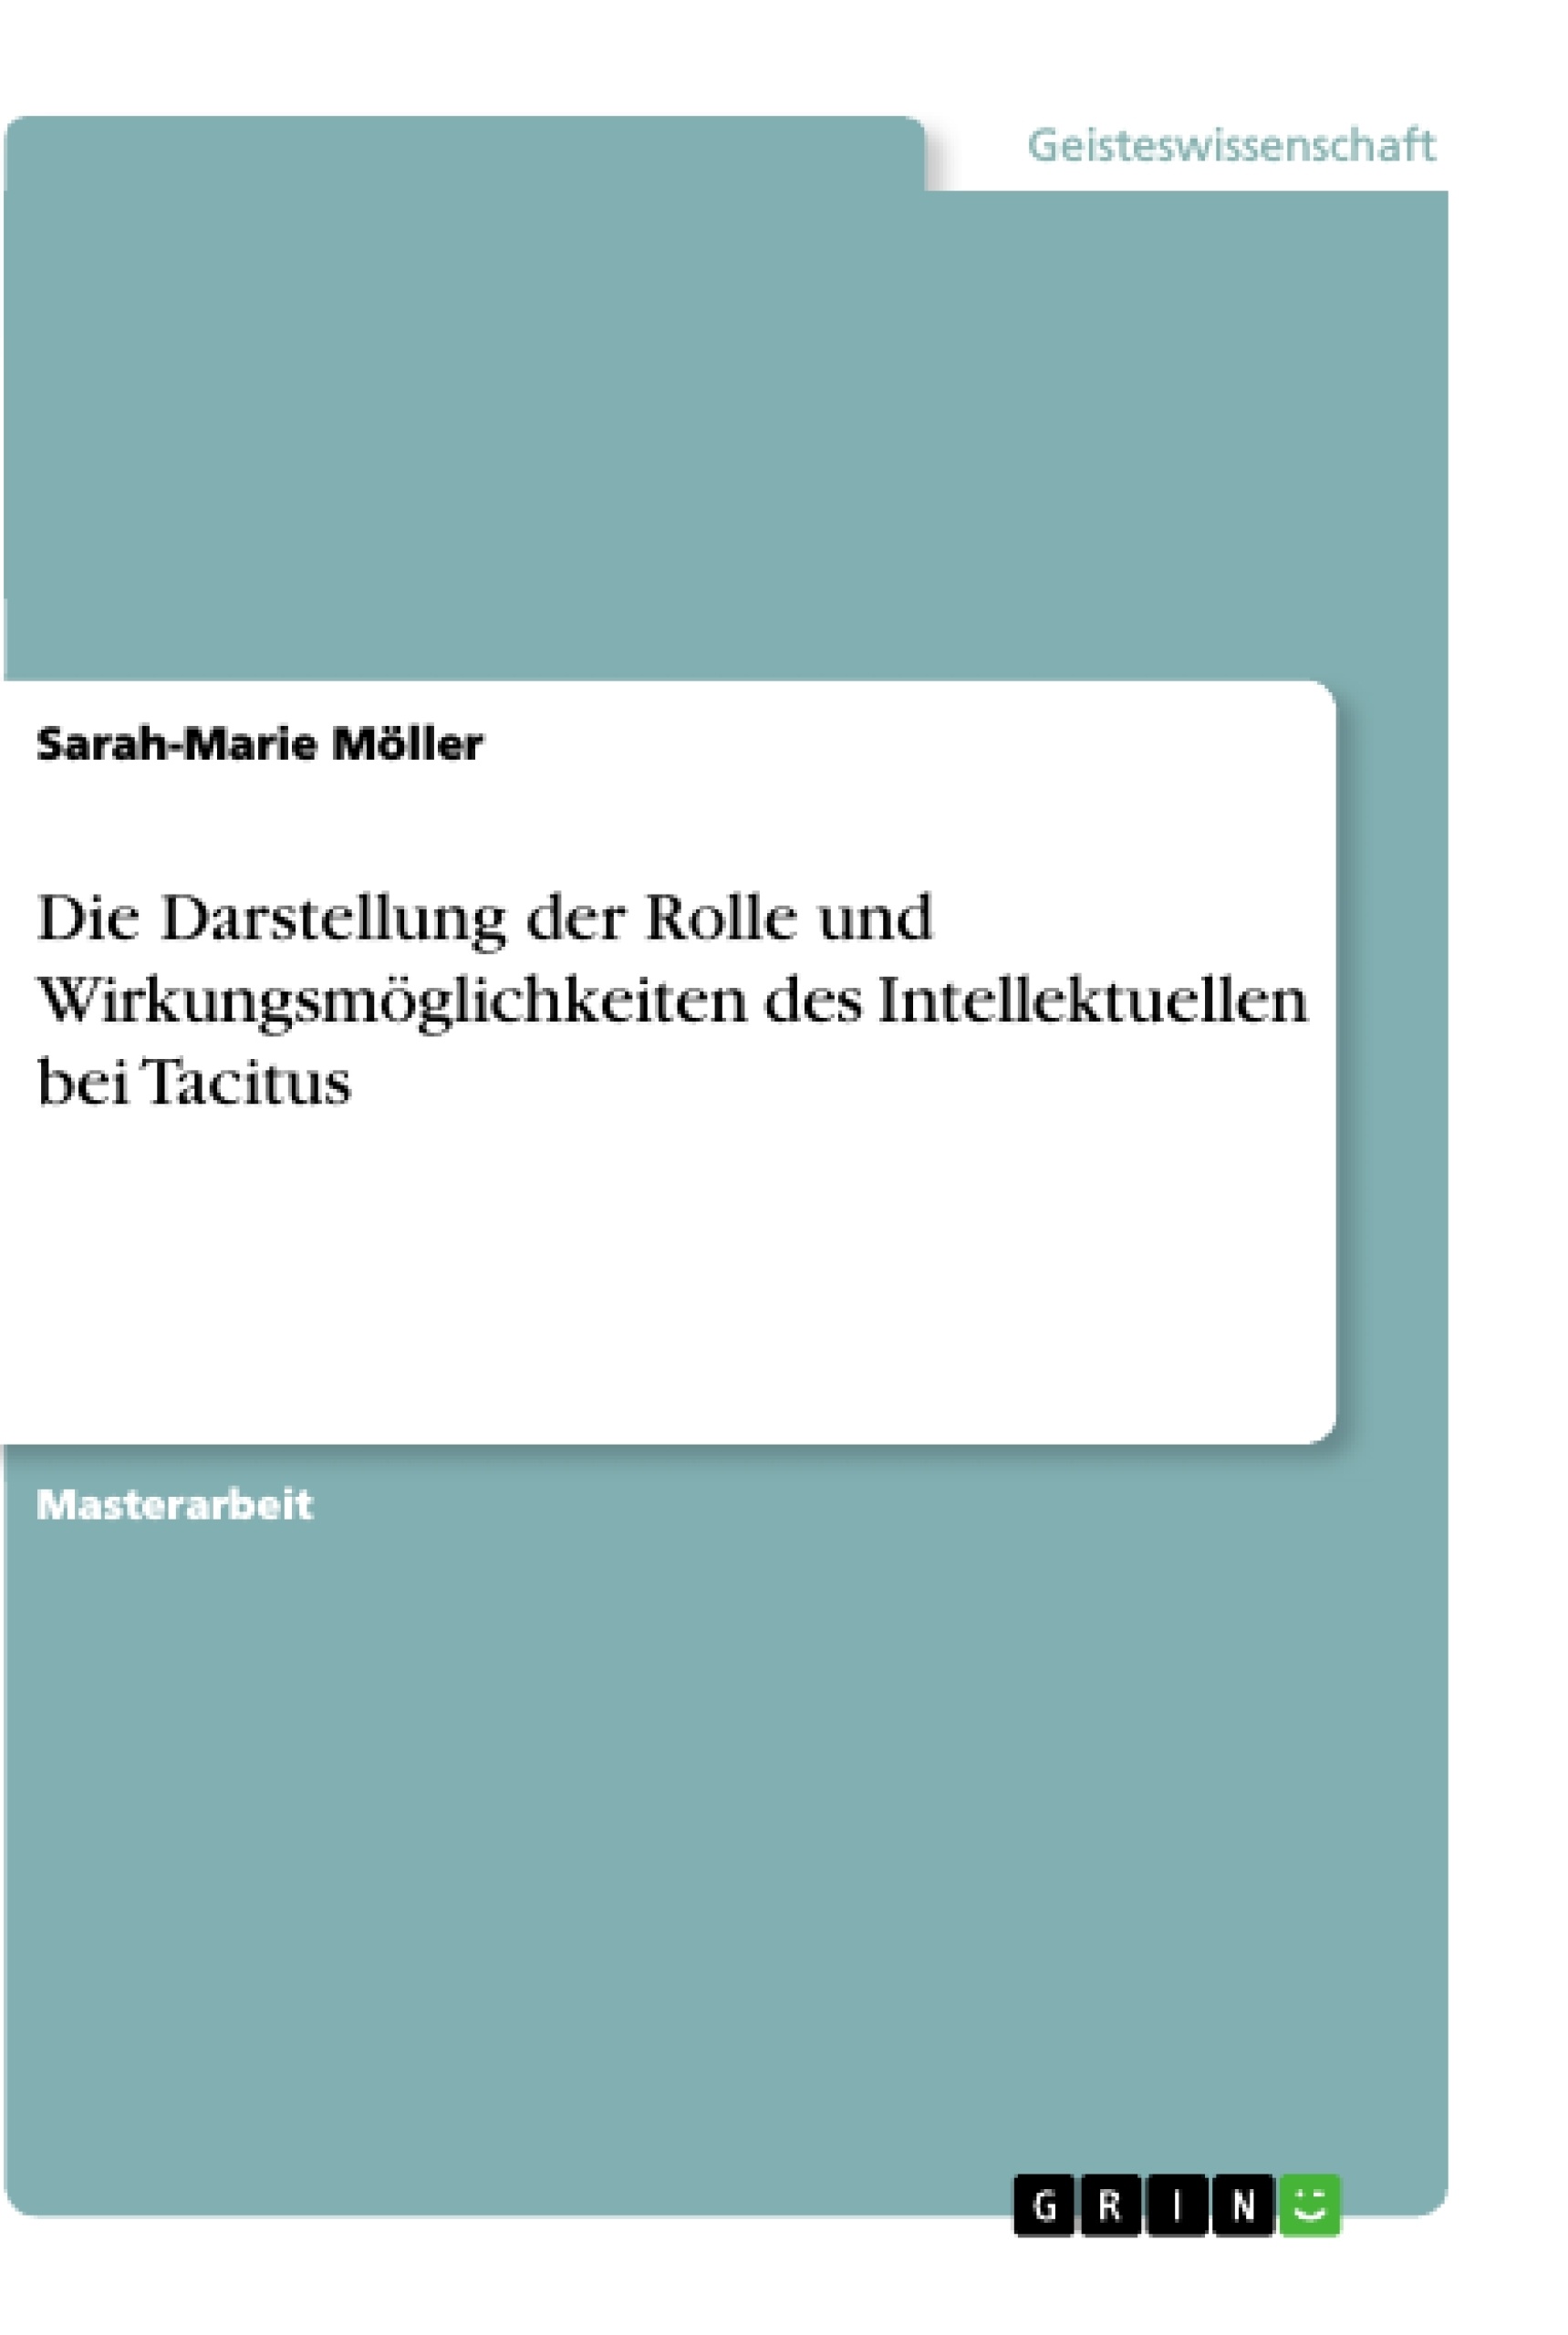 Title: Die Darstellung der Rolle und Wirkungsmöglichkeiten des Intellektuellen bei Tacitus